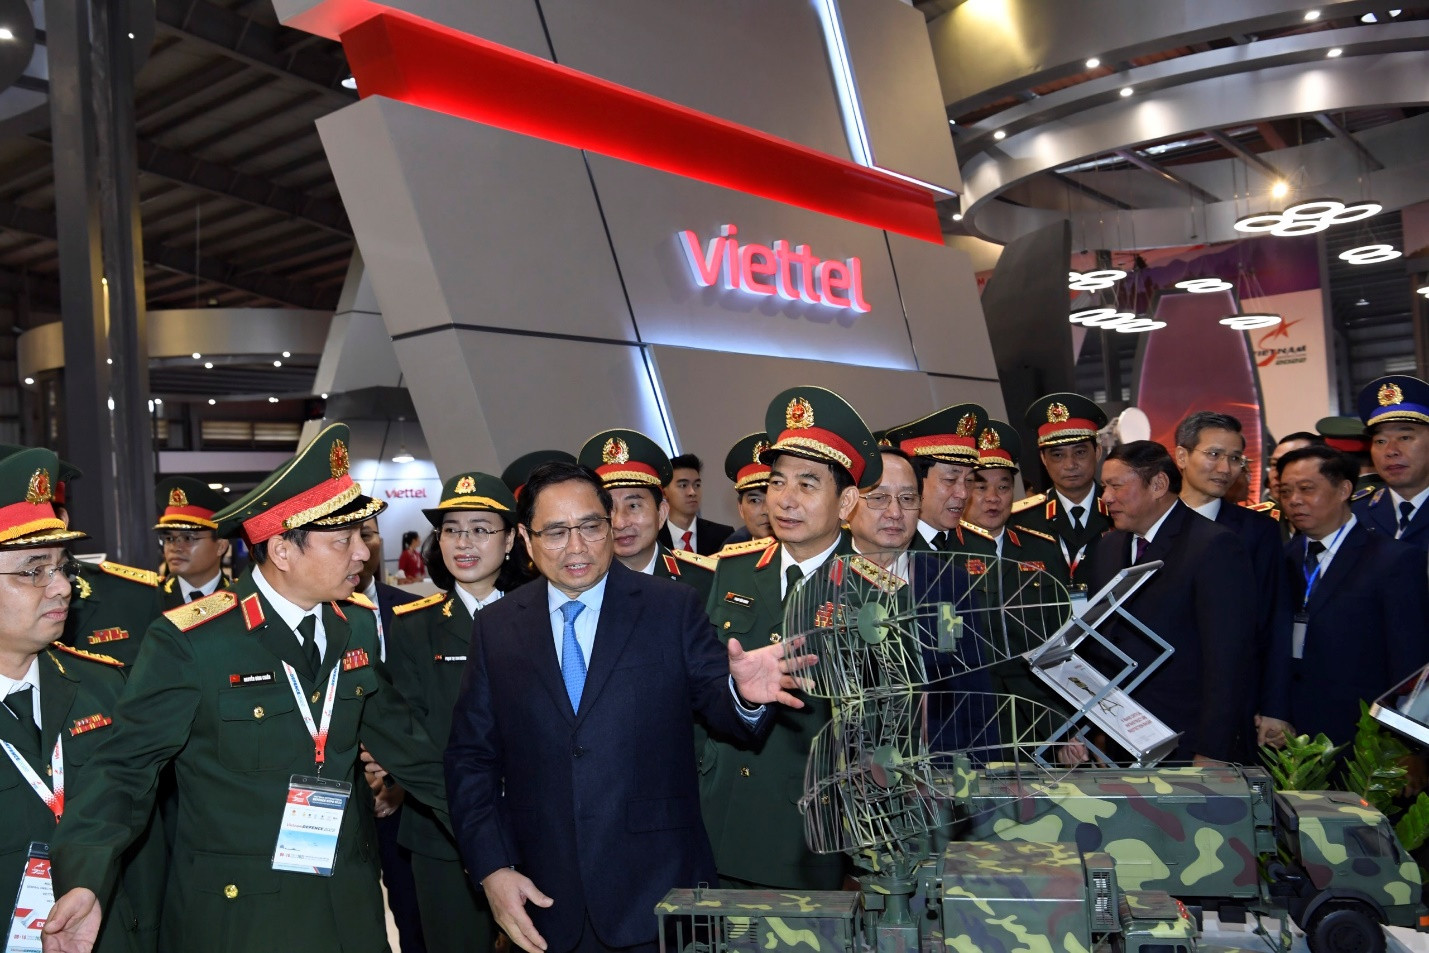 Thủ tướng Chính phủ Phạm Minh Chính nghe thuyết trình về các sản phẩm quân sự do Viettel nghiên cứu, phát triển tại Triển lãm Vietnam Defence 2022.